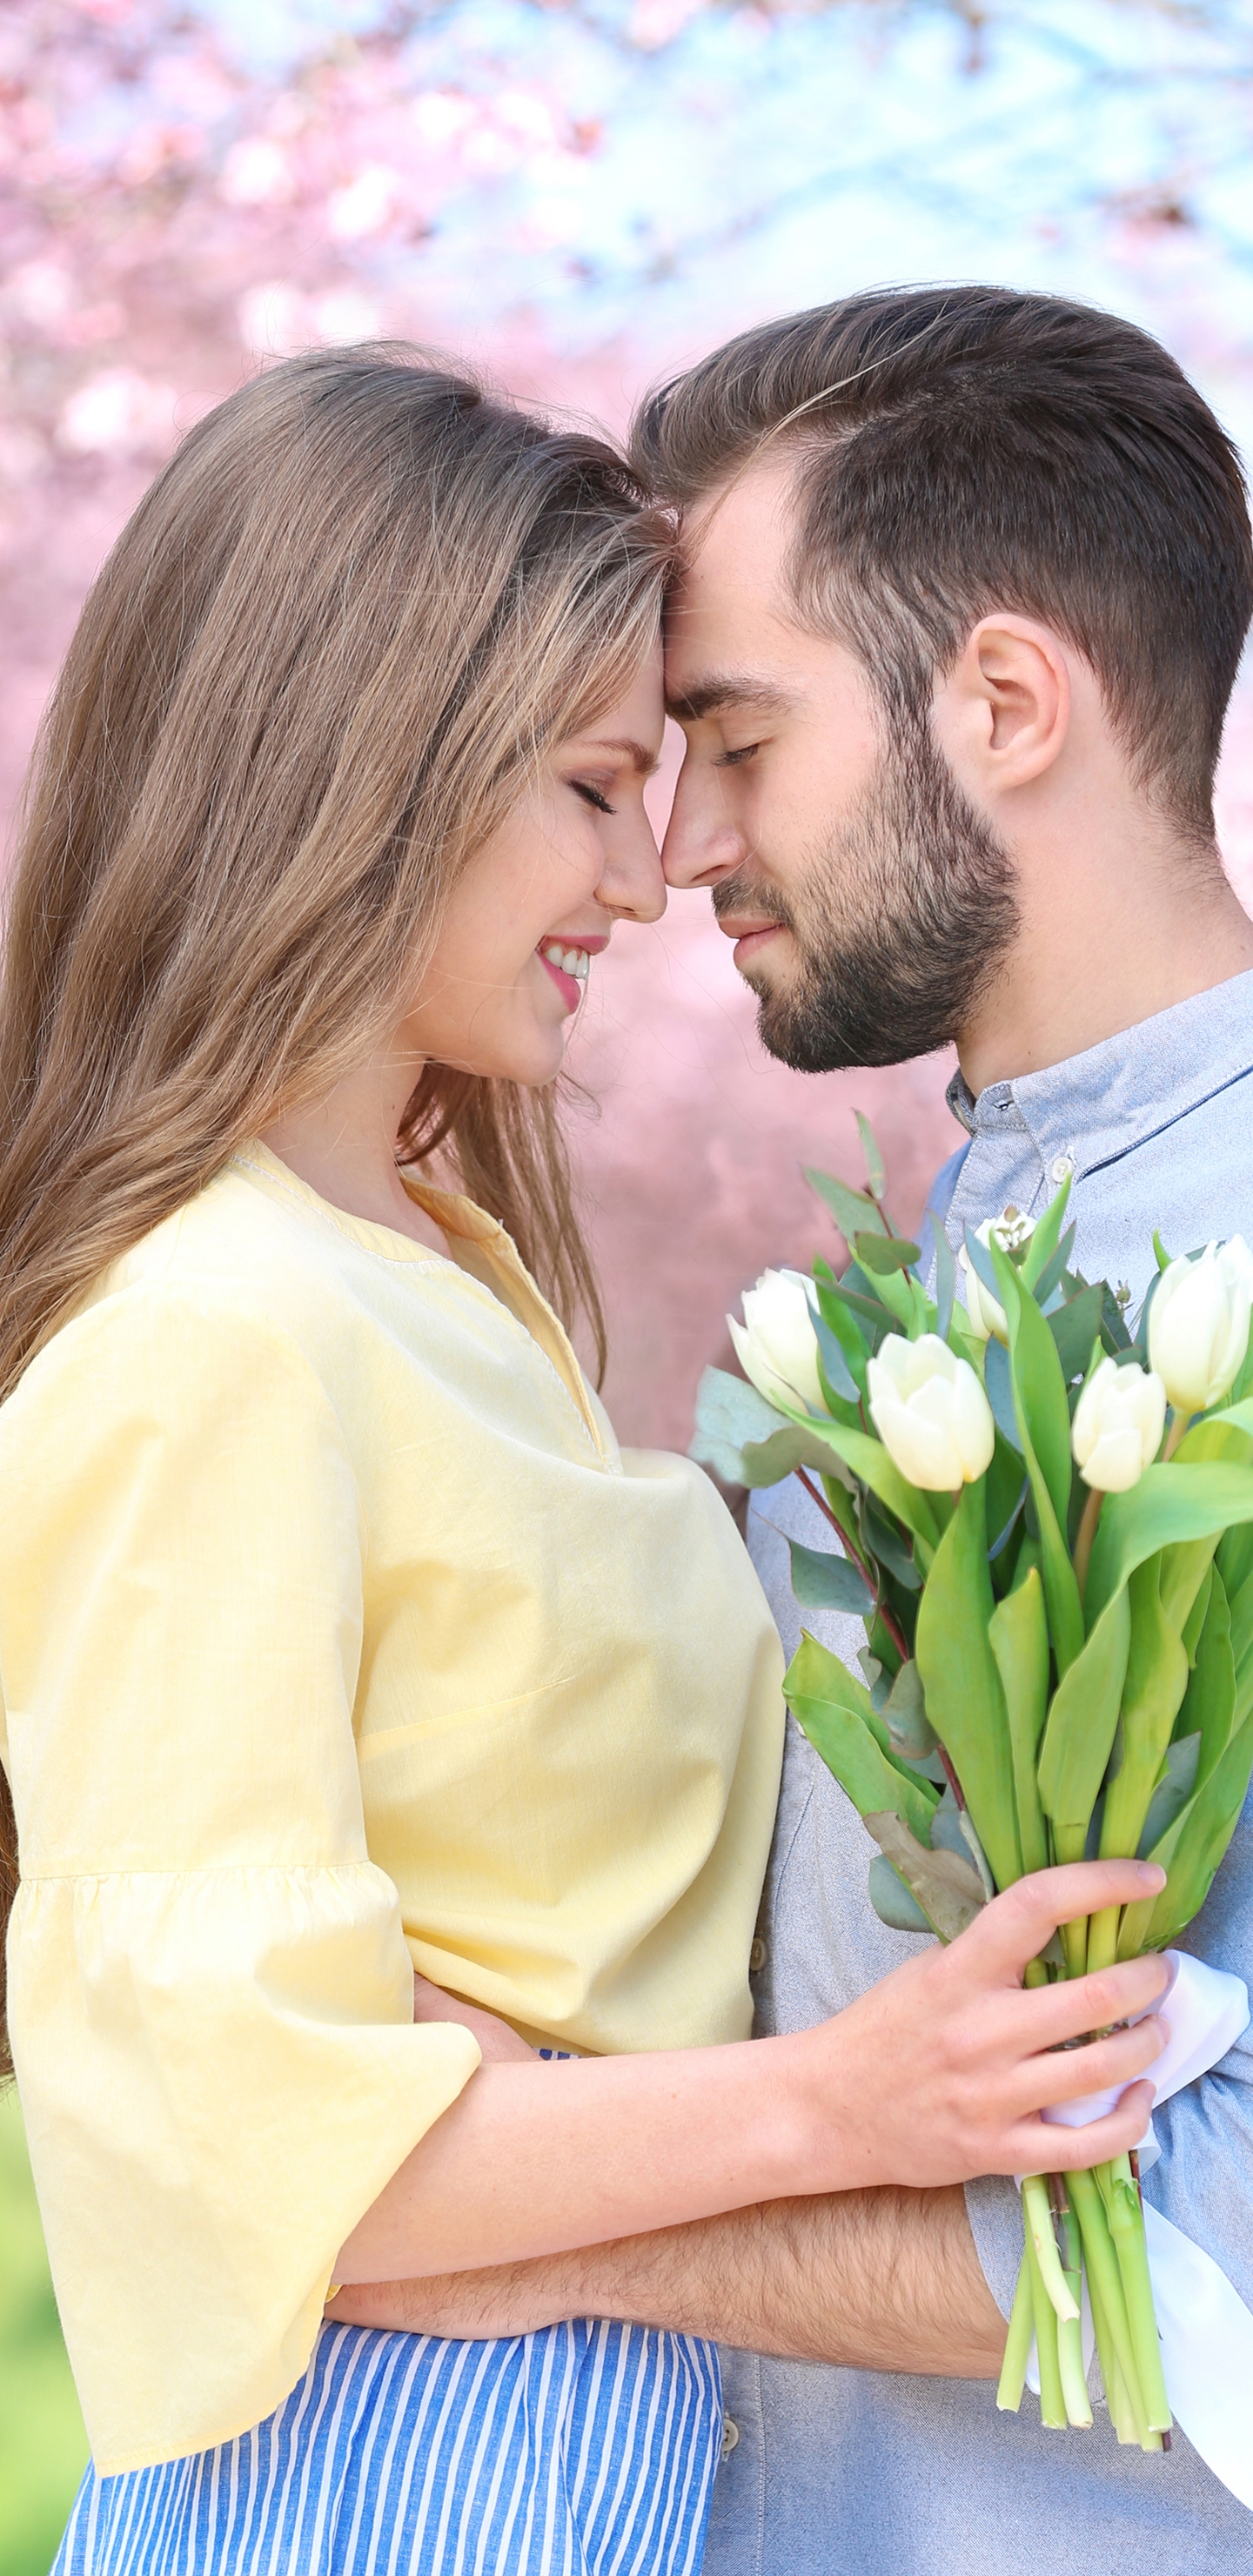 Картинка: Пара, цветы, тюльпаны, мужчина, девушка, любовь, парк, деревья